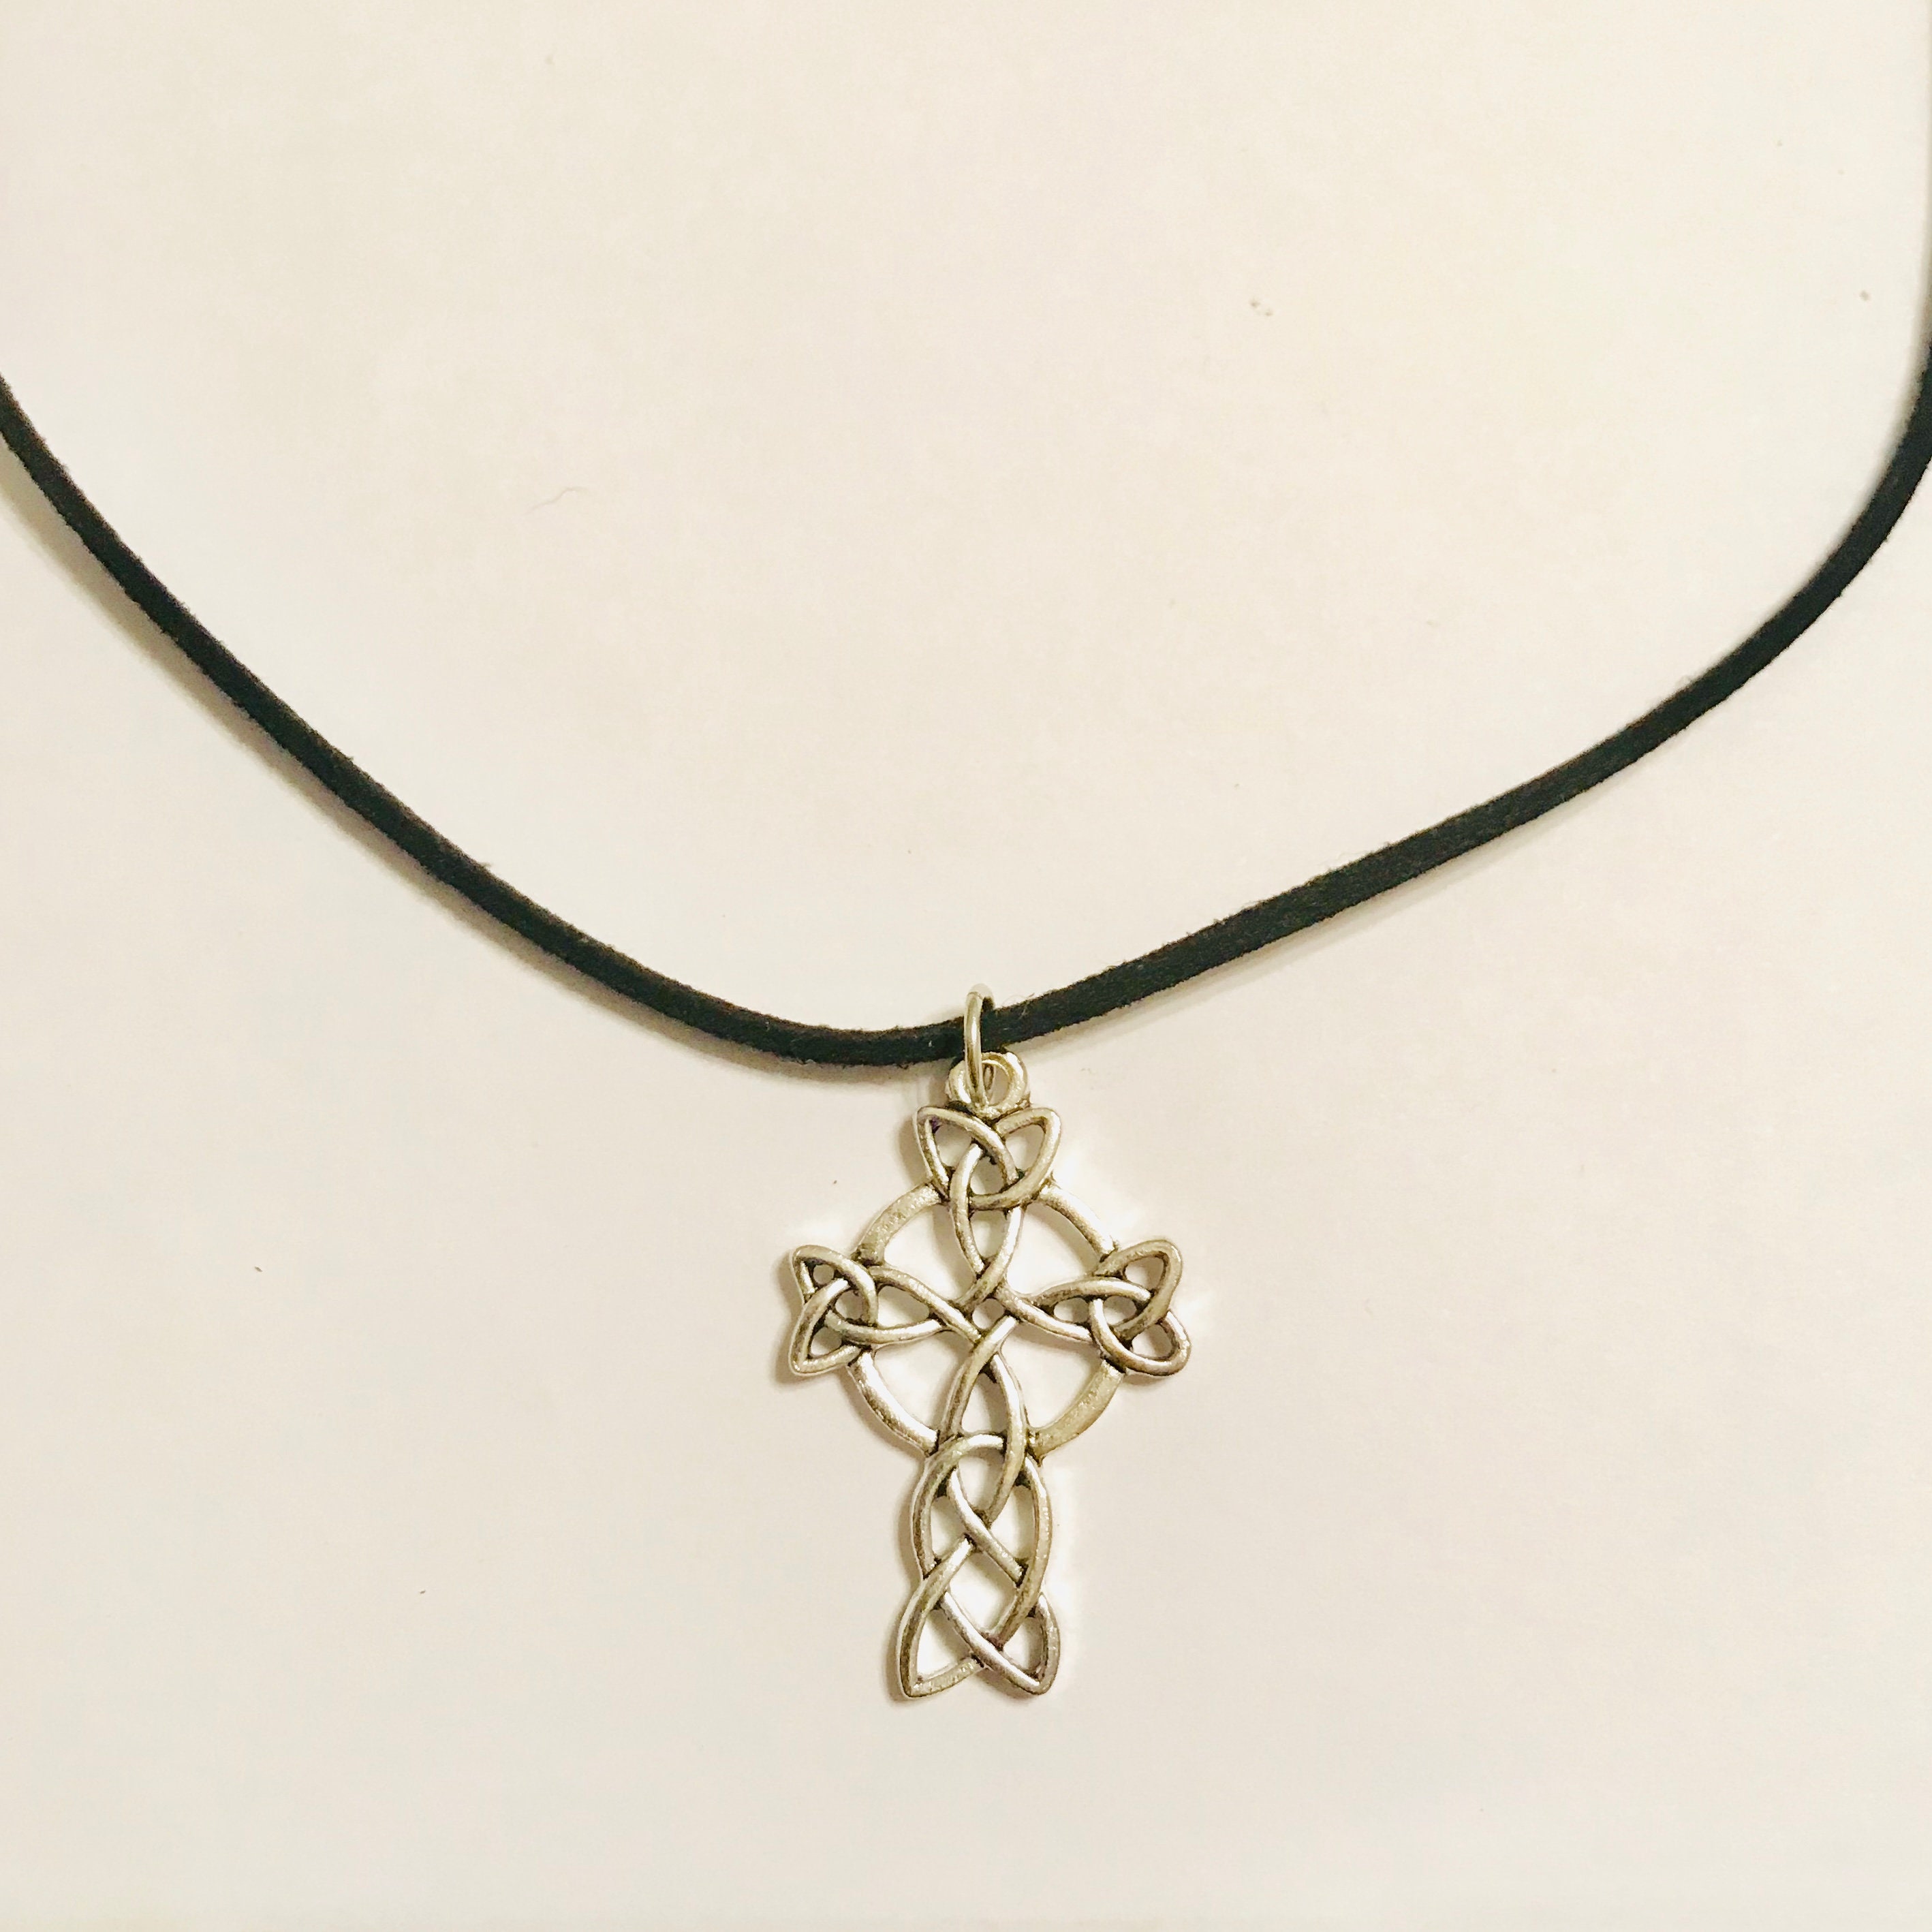 Antique Silver Celtic Cross Pendant Necklace